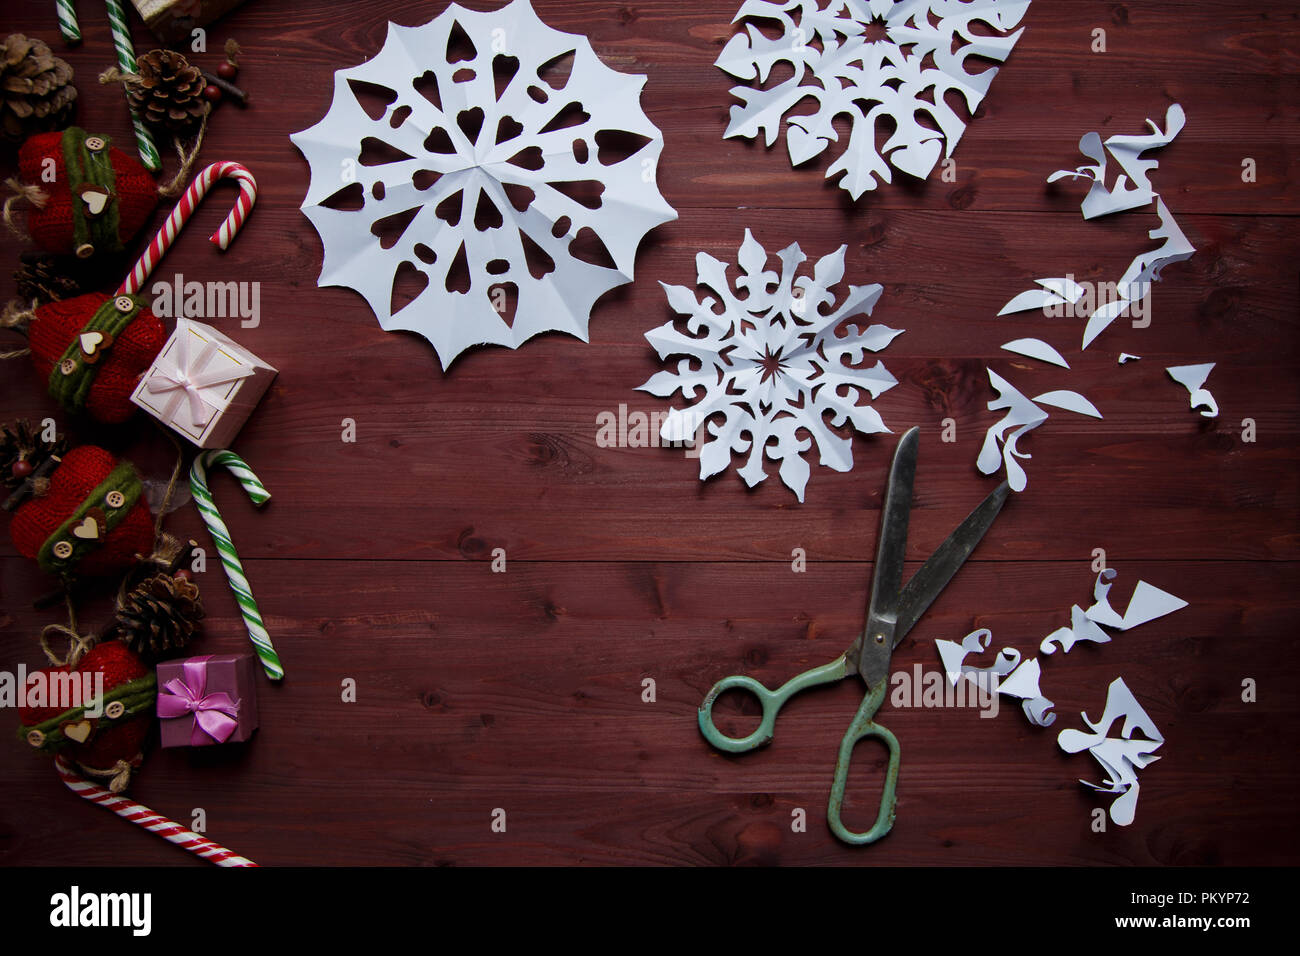 Concepto de Año Nuevo. Los copos de nieve de papel cortado, regalos, tijeras en una mesa de madera espacio de copia Foto de stock